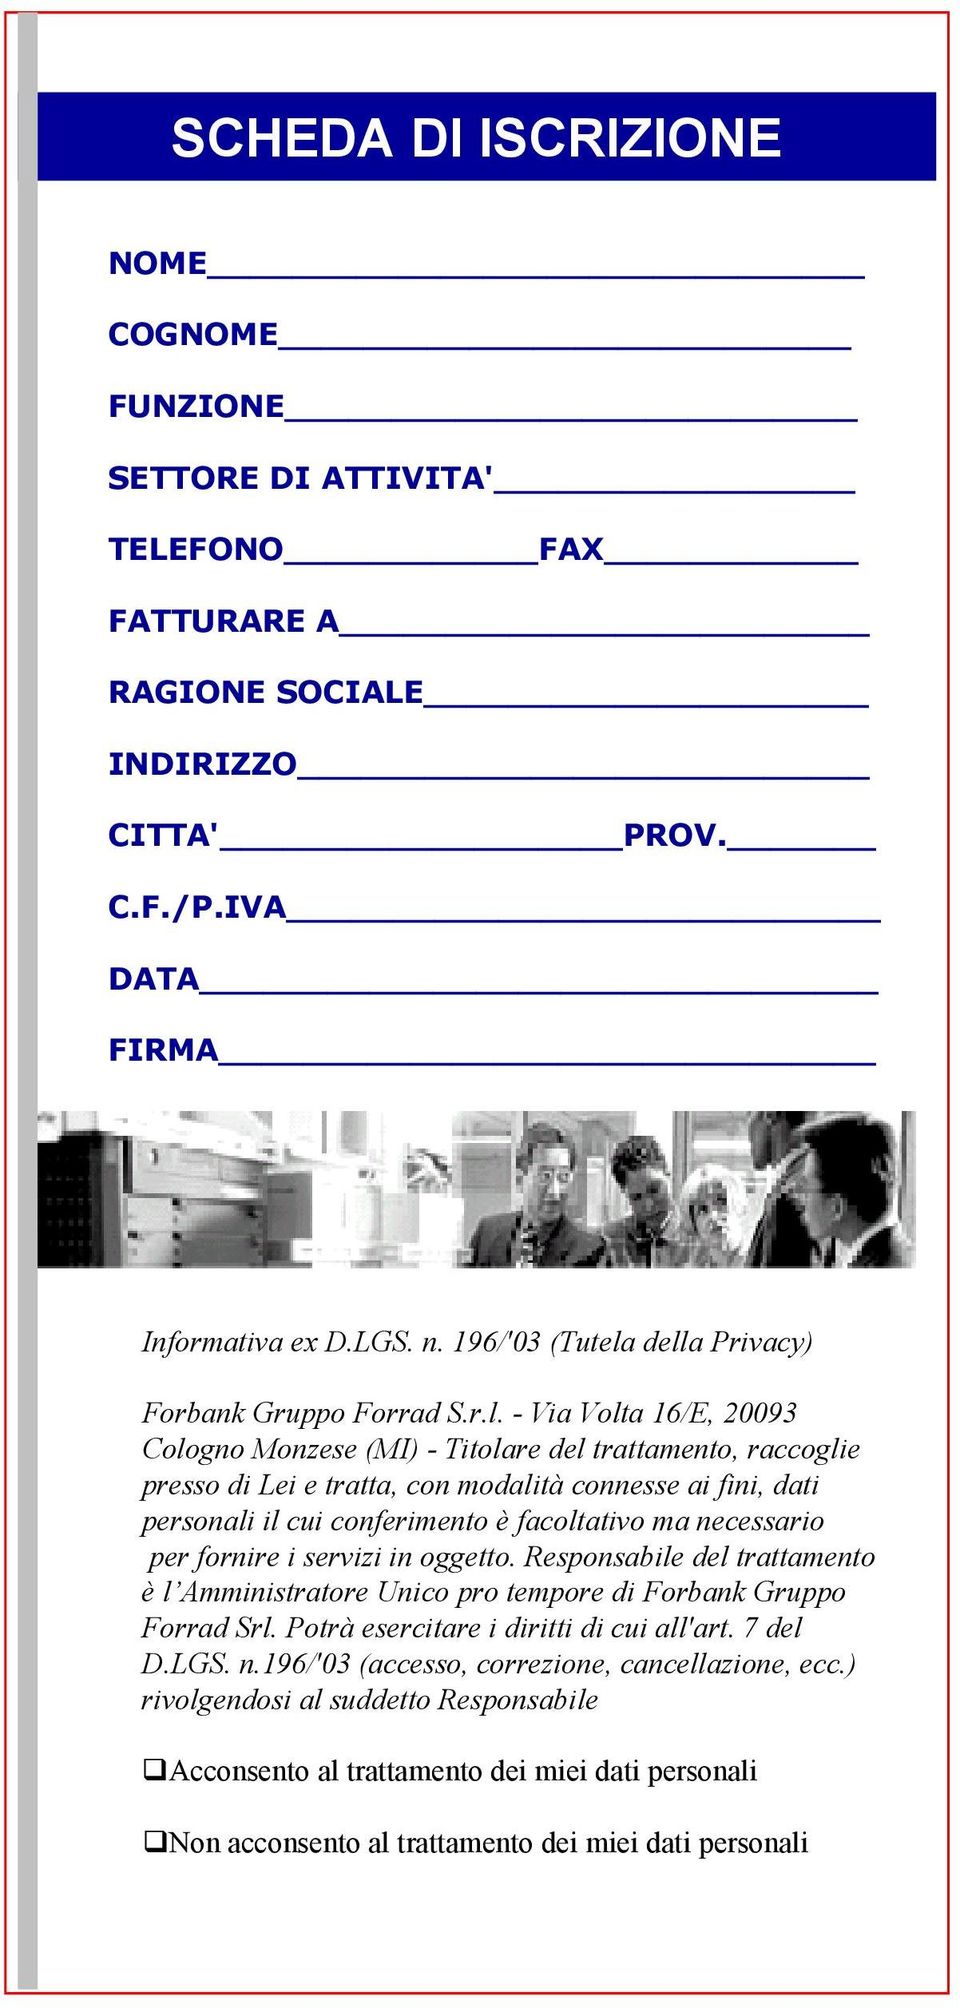 della Privacy) Forbank Gruppo Forrad S.r.l. - Via Volta 16/E, 20093 Cologno Monzese (MI) - Titolare del trattamento, raccoglie presso di Lei e tratta, con modalità connesse ai fini, dati personali il